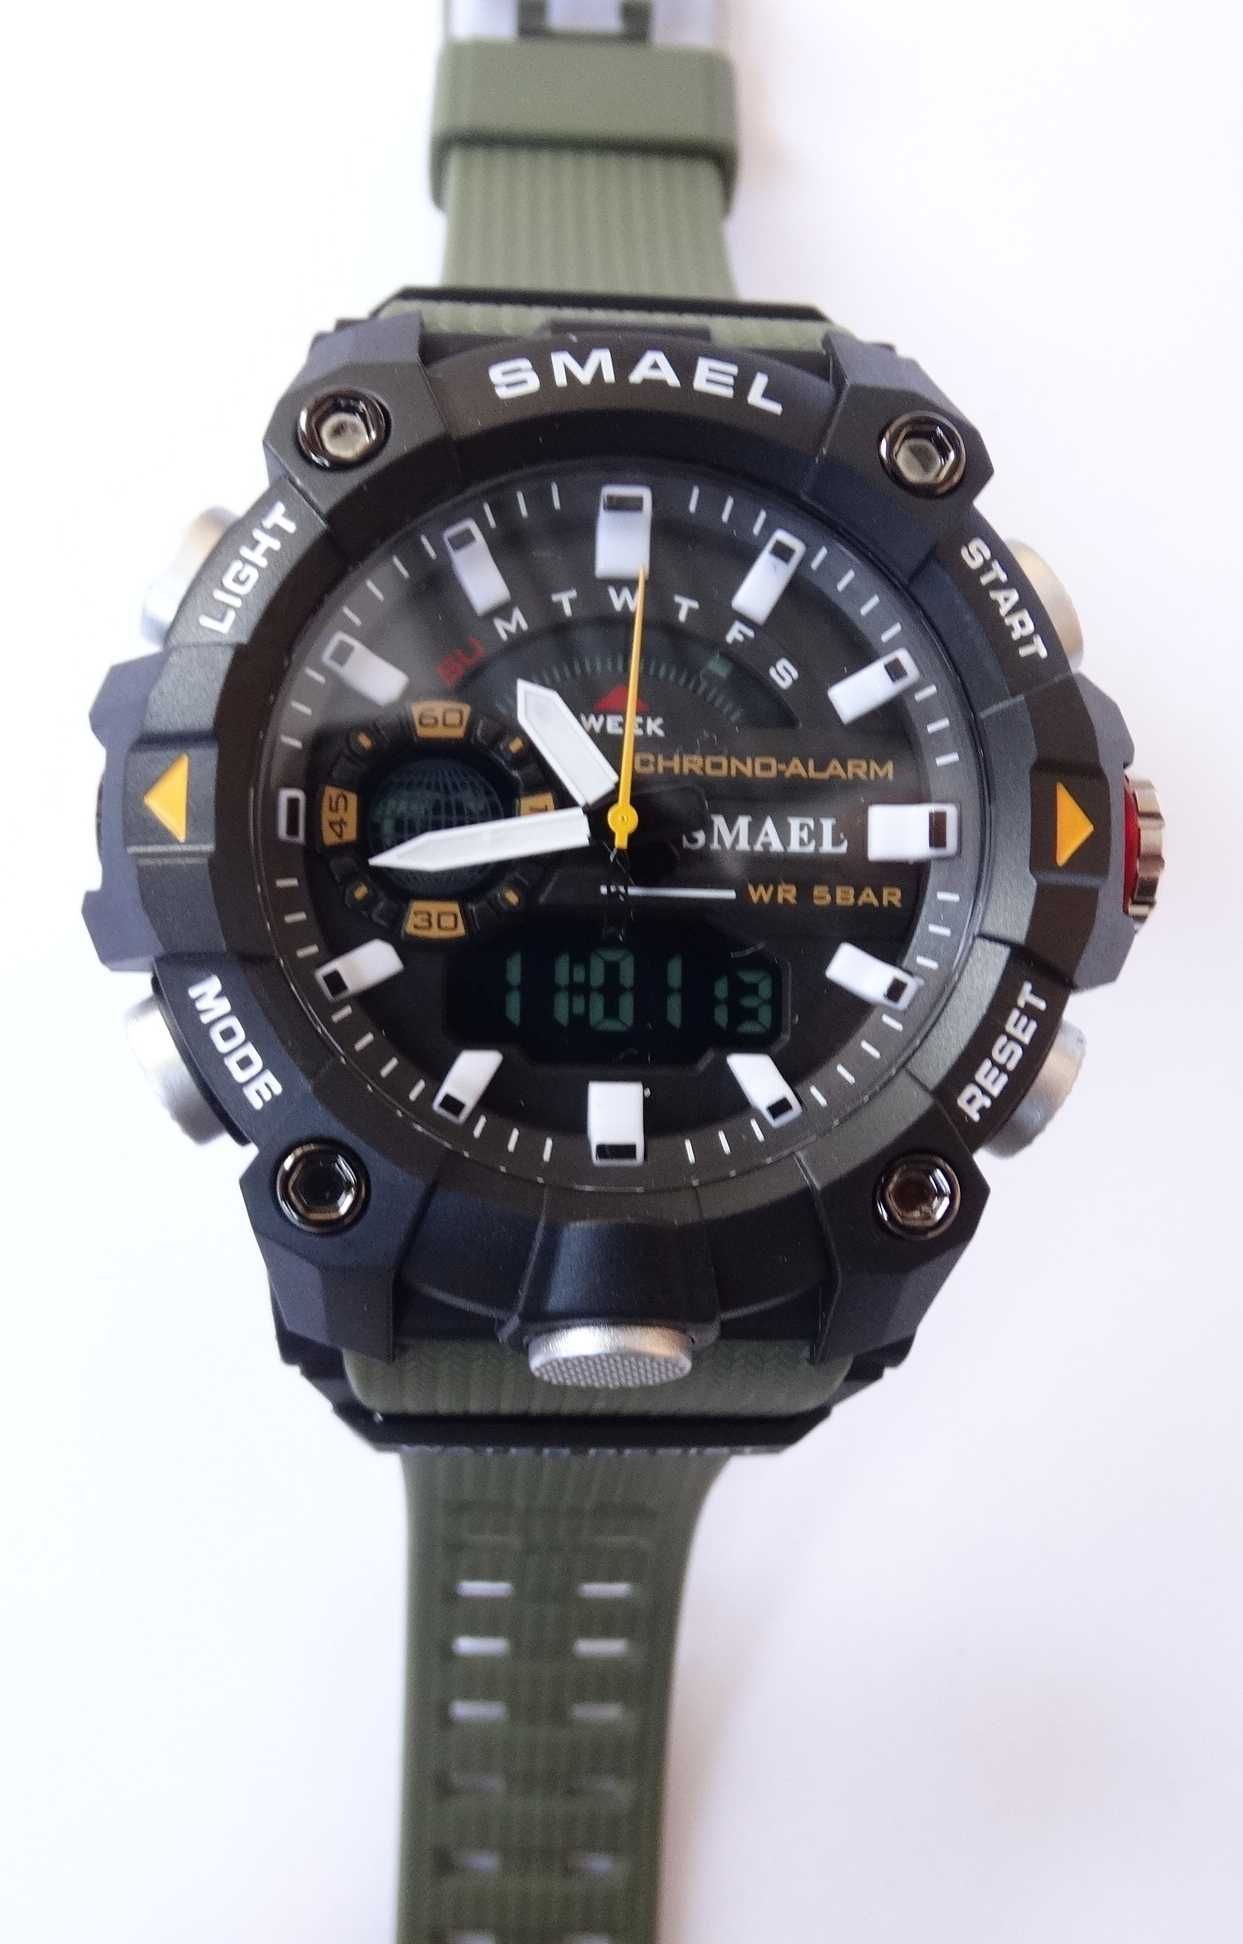 Sportowy zegarek męski Smael zielony elektroniczny cyfrowy militarny